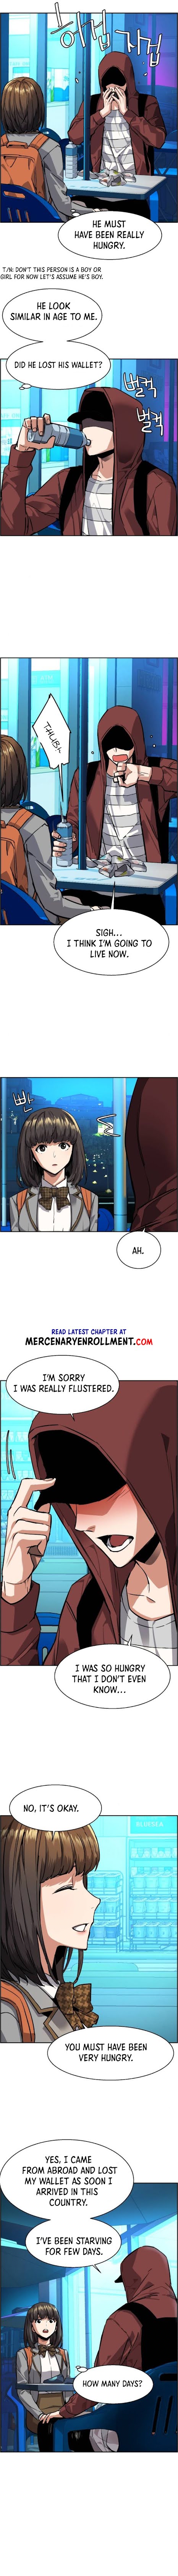 Mercenary Enrollment, Chapter 51 image 12